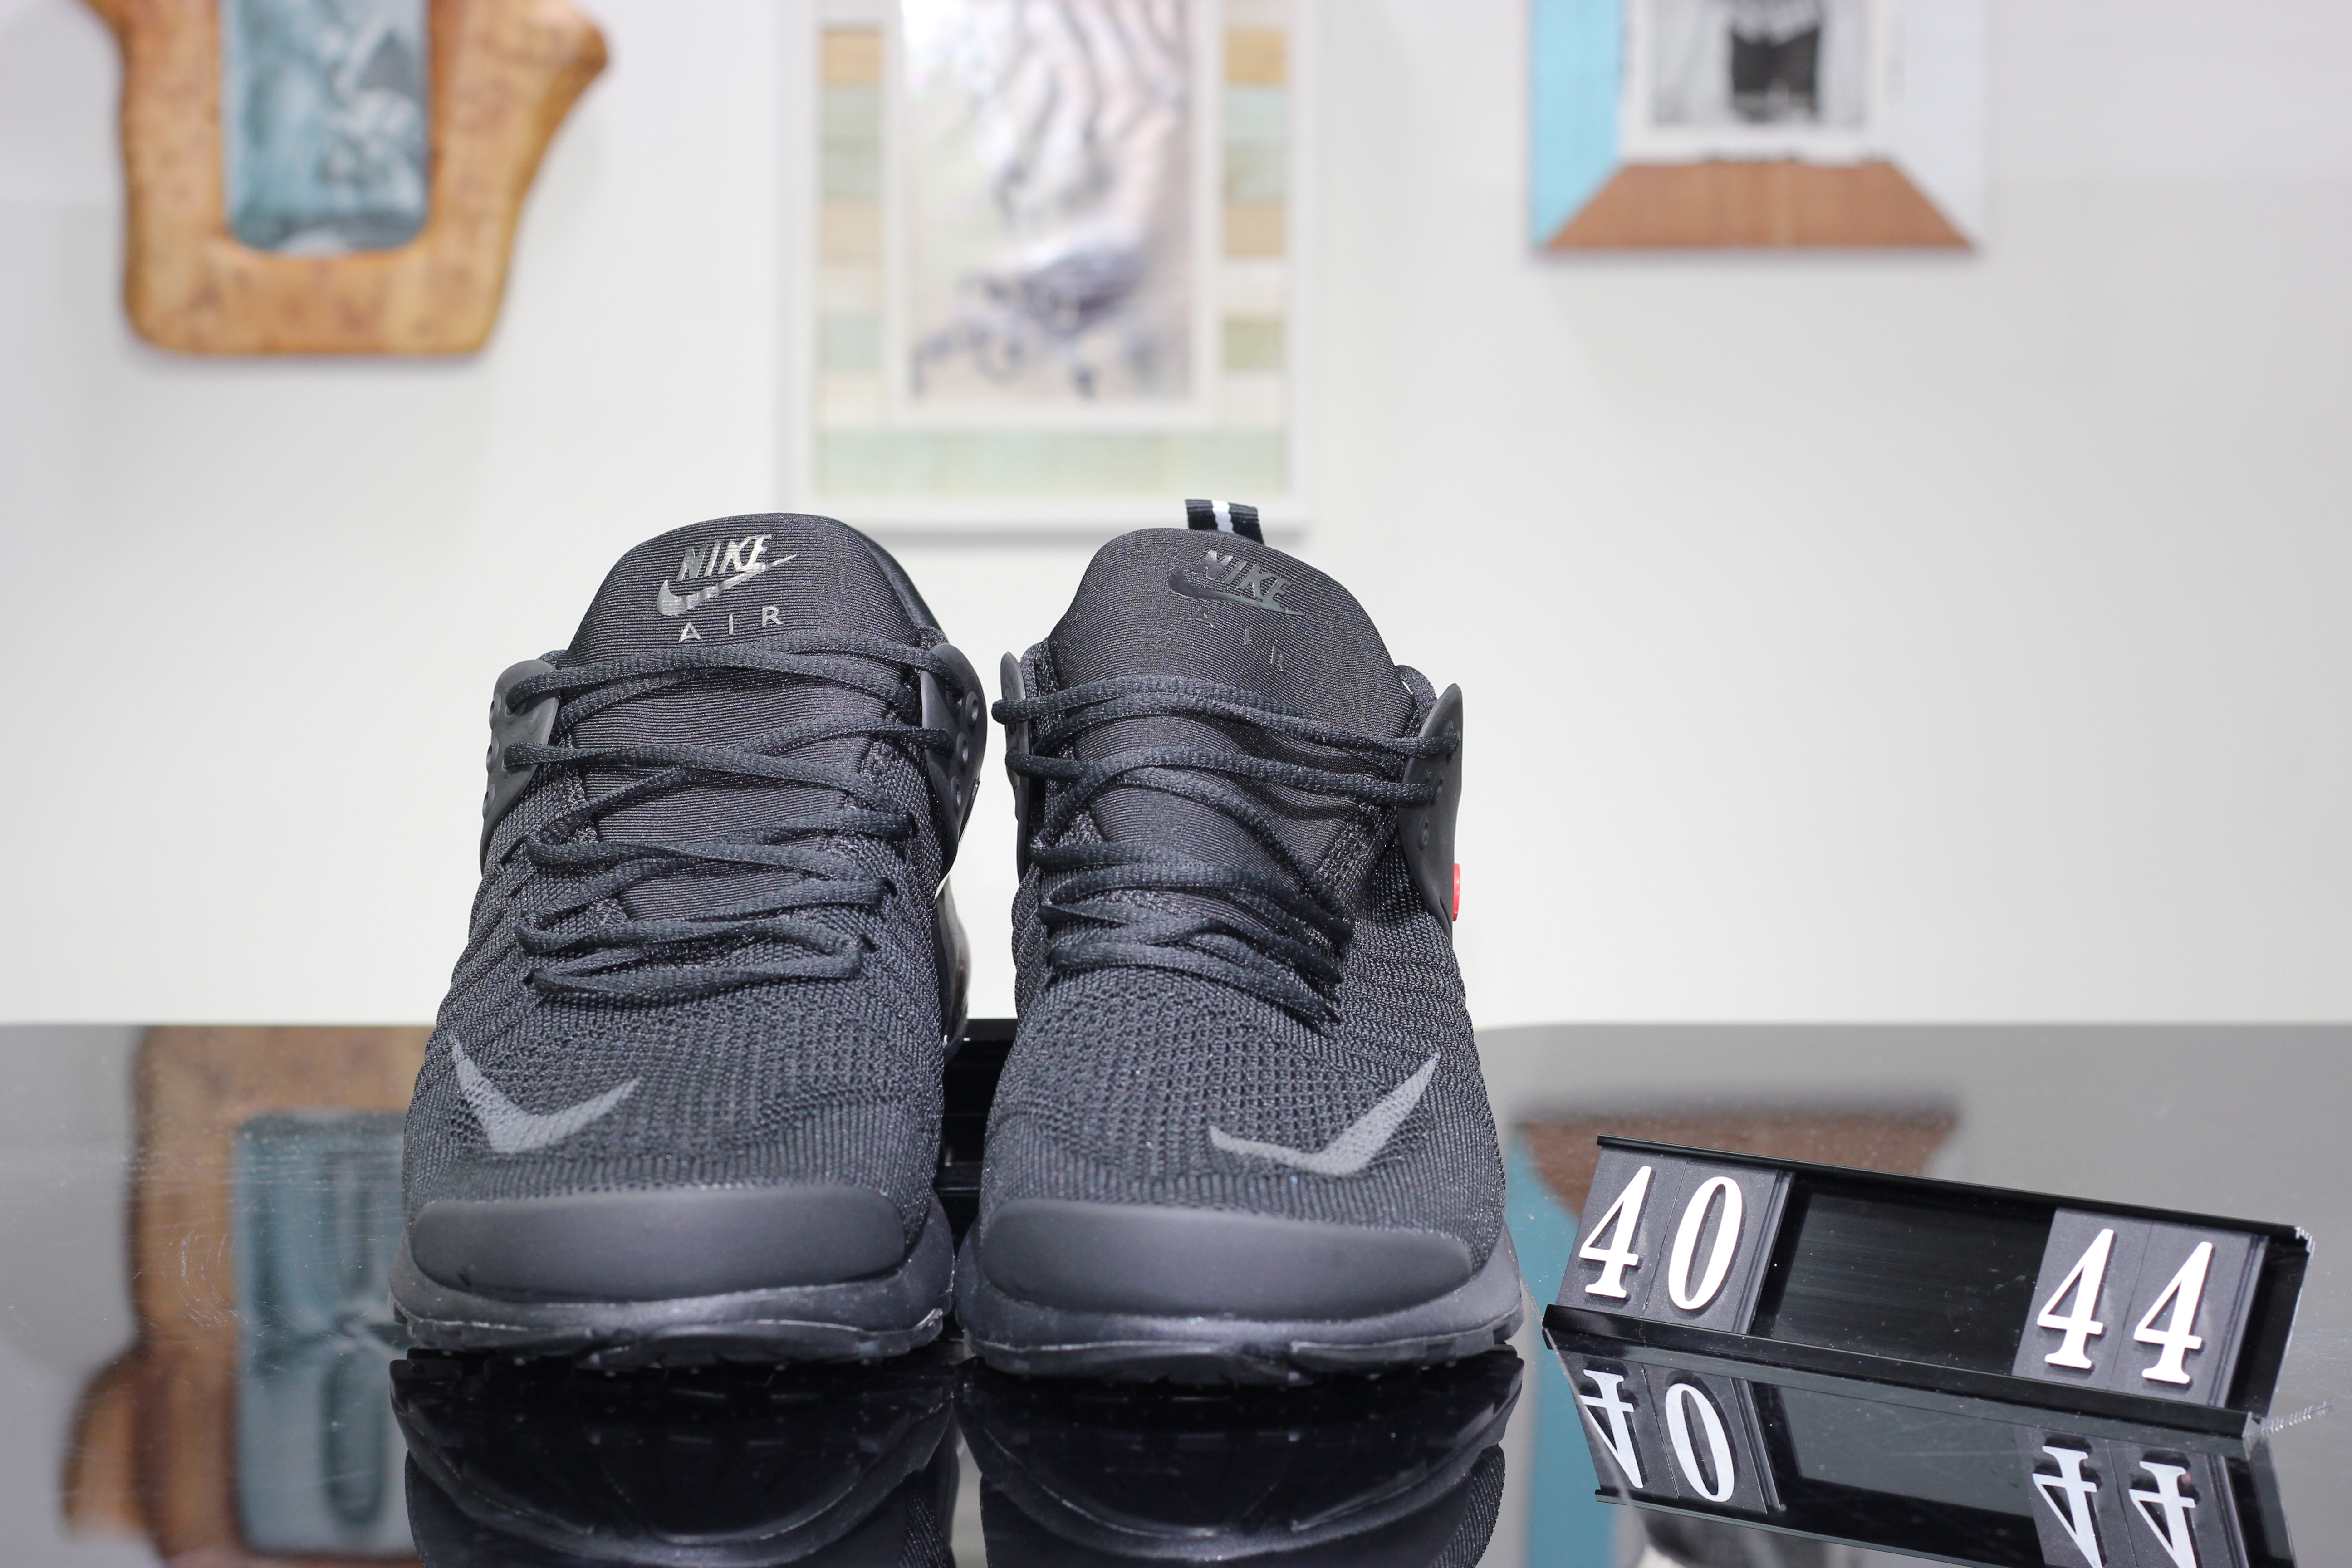 Nike Air Presto V All Black Shoes - Click Image to Close